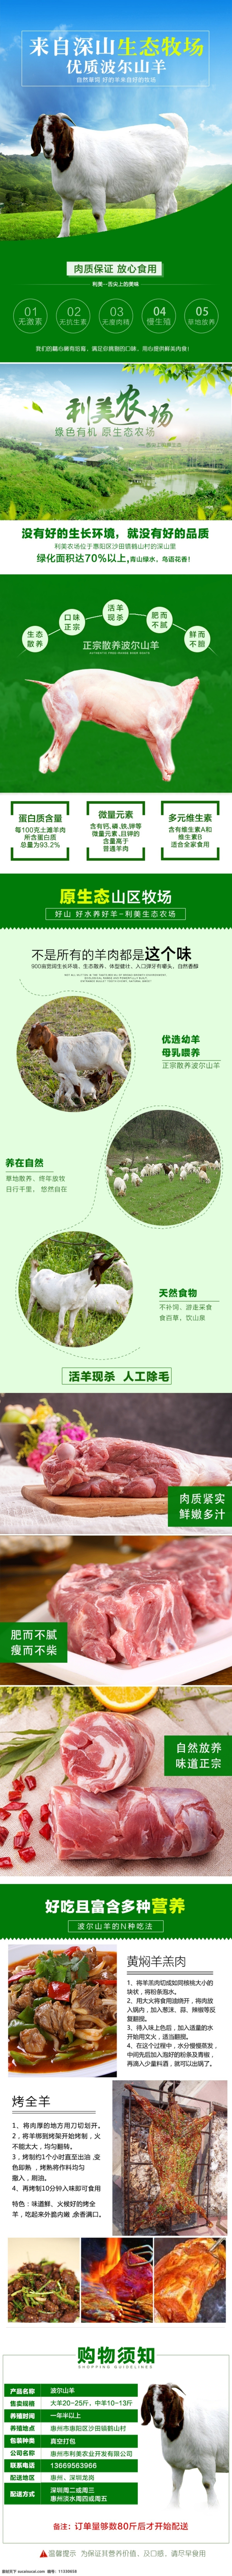 波尔 山羊 淘宝 详情 页 绿色 psd源文件 绿色详情页 模版 生态农场 清新绿 淘宝详情介绍 羊